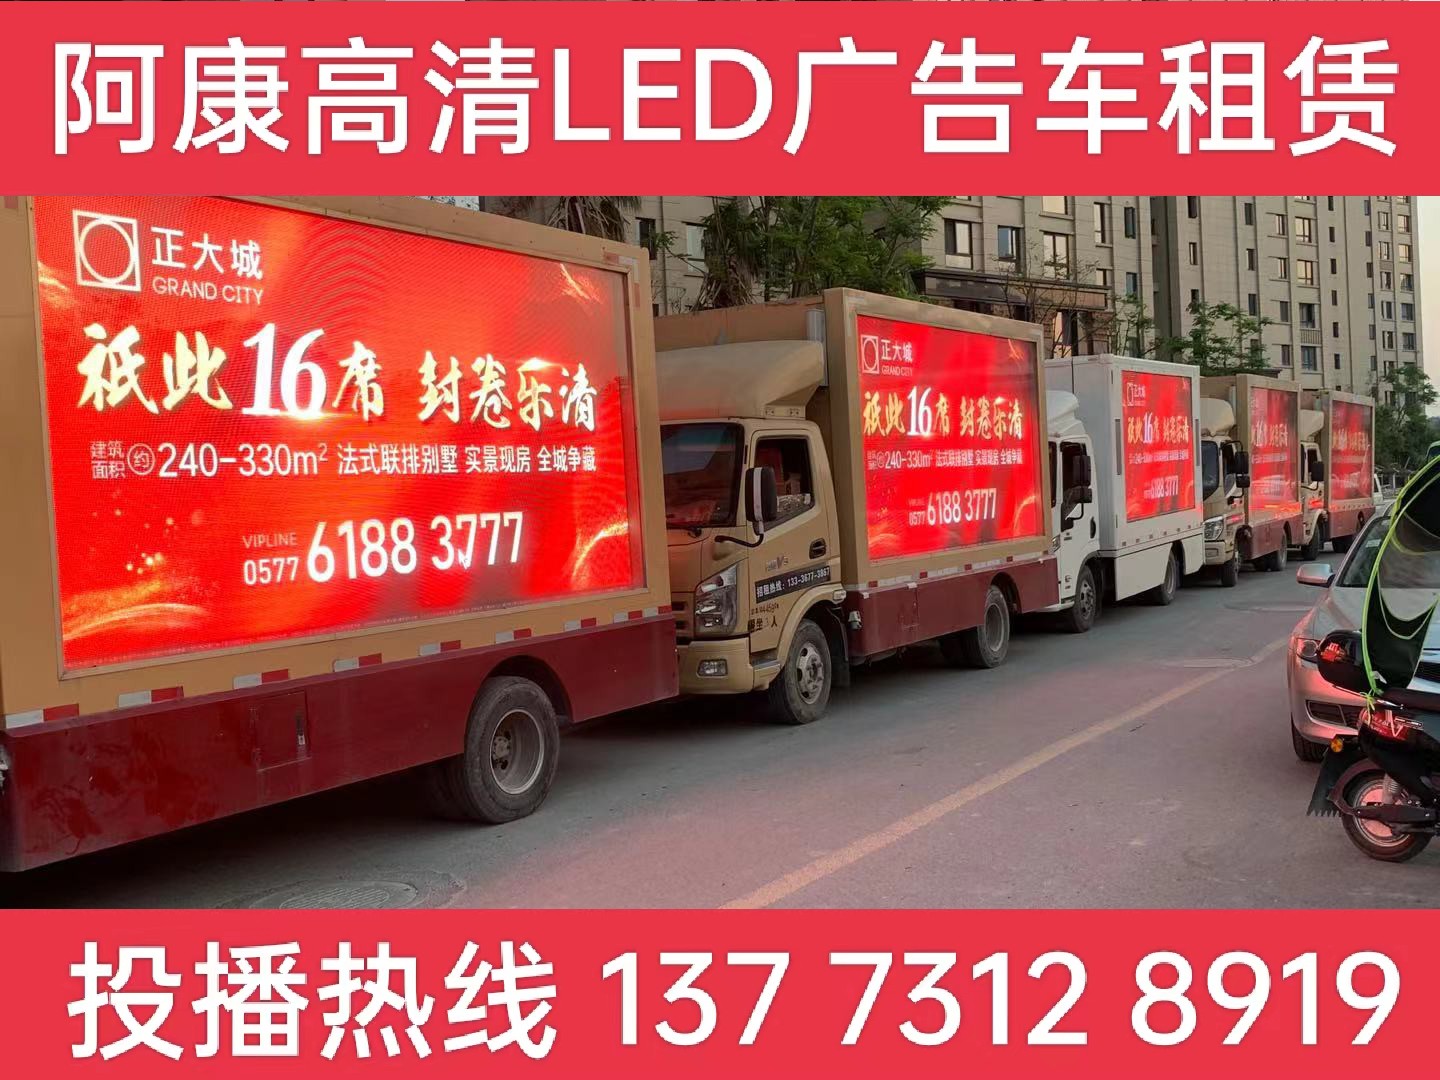 嘉兴LED广告车出租